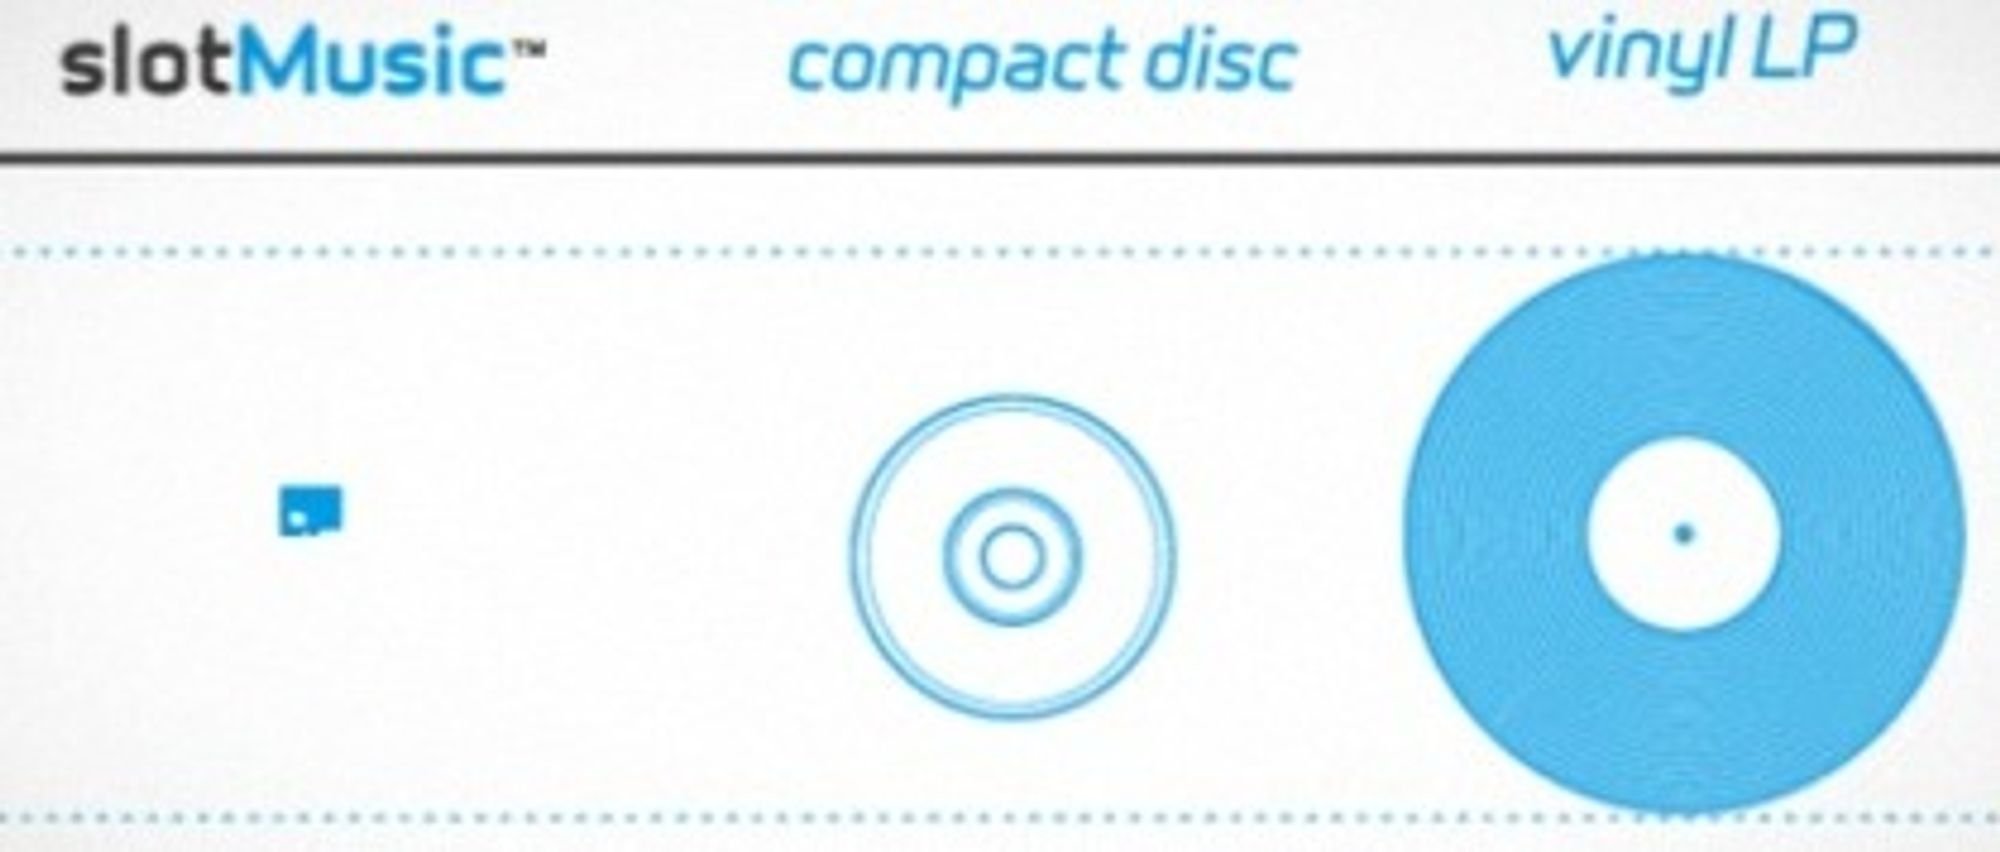 Illustrasjonen viser hvilke ambisjoner plateselskapene har for det nye formatet. De håper å kunne erstatte CD-plata. (Kilde: slotmusic.org)